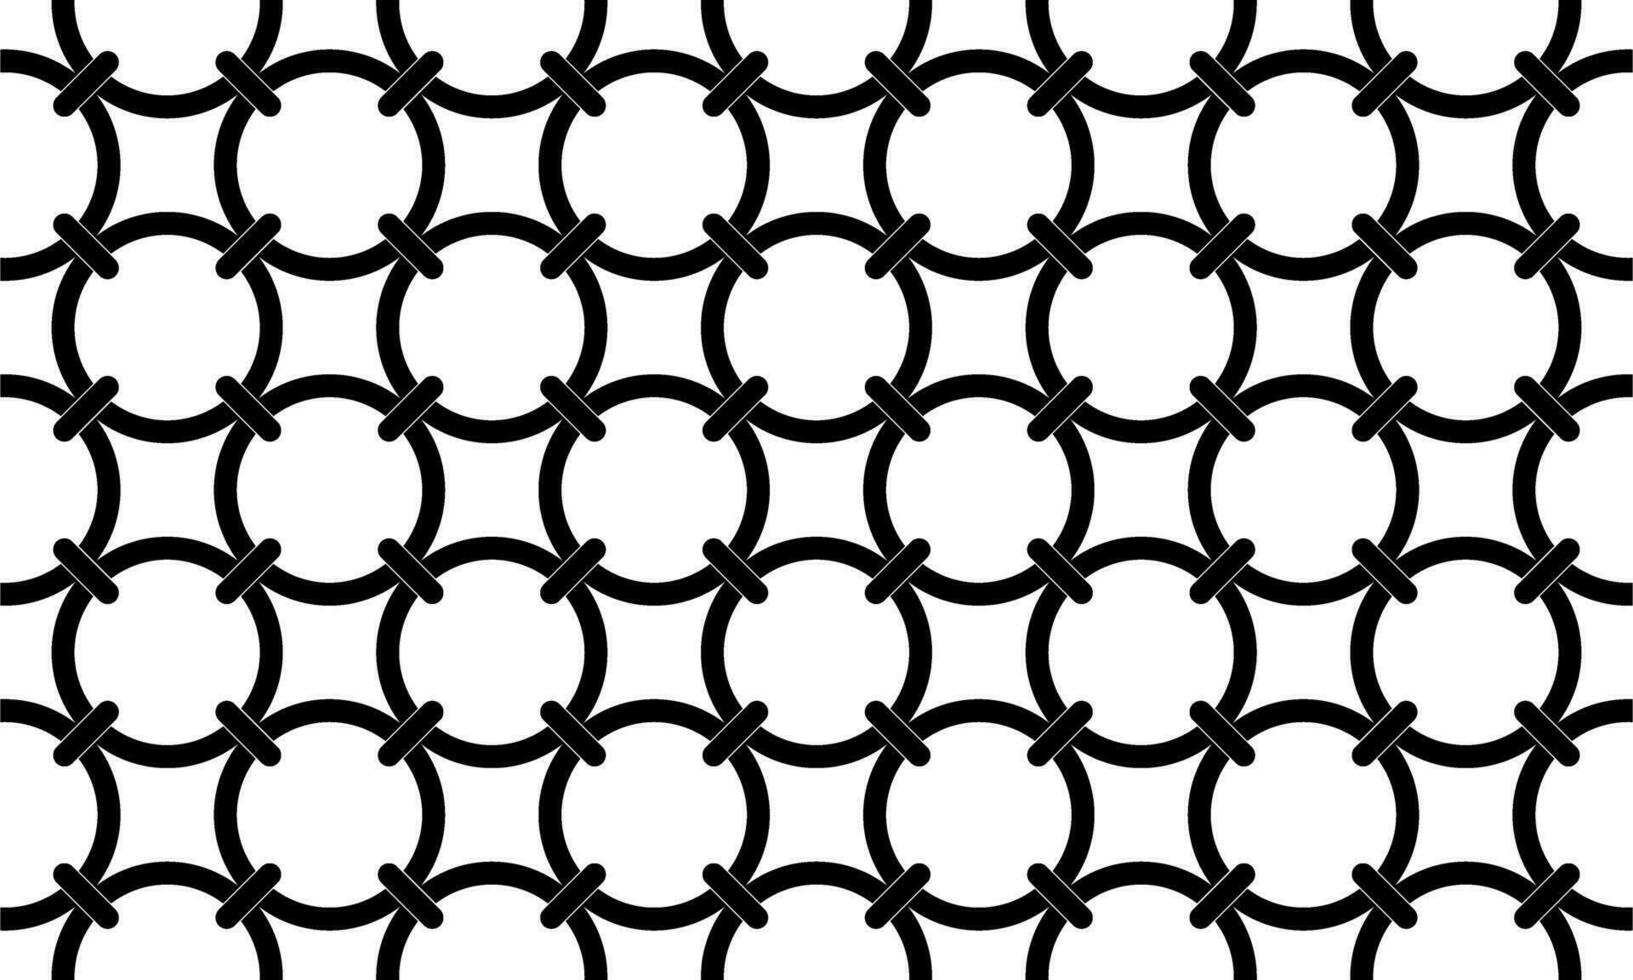 cirkel vorm motieven patroon, kan gebruik voor overladen, achtergrond of voor decoratie. modern hedendaags patroon stijl. vector illustratie